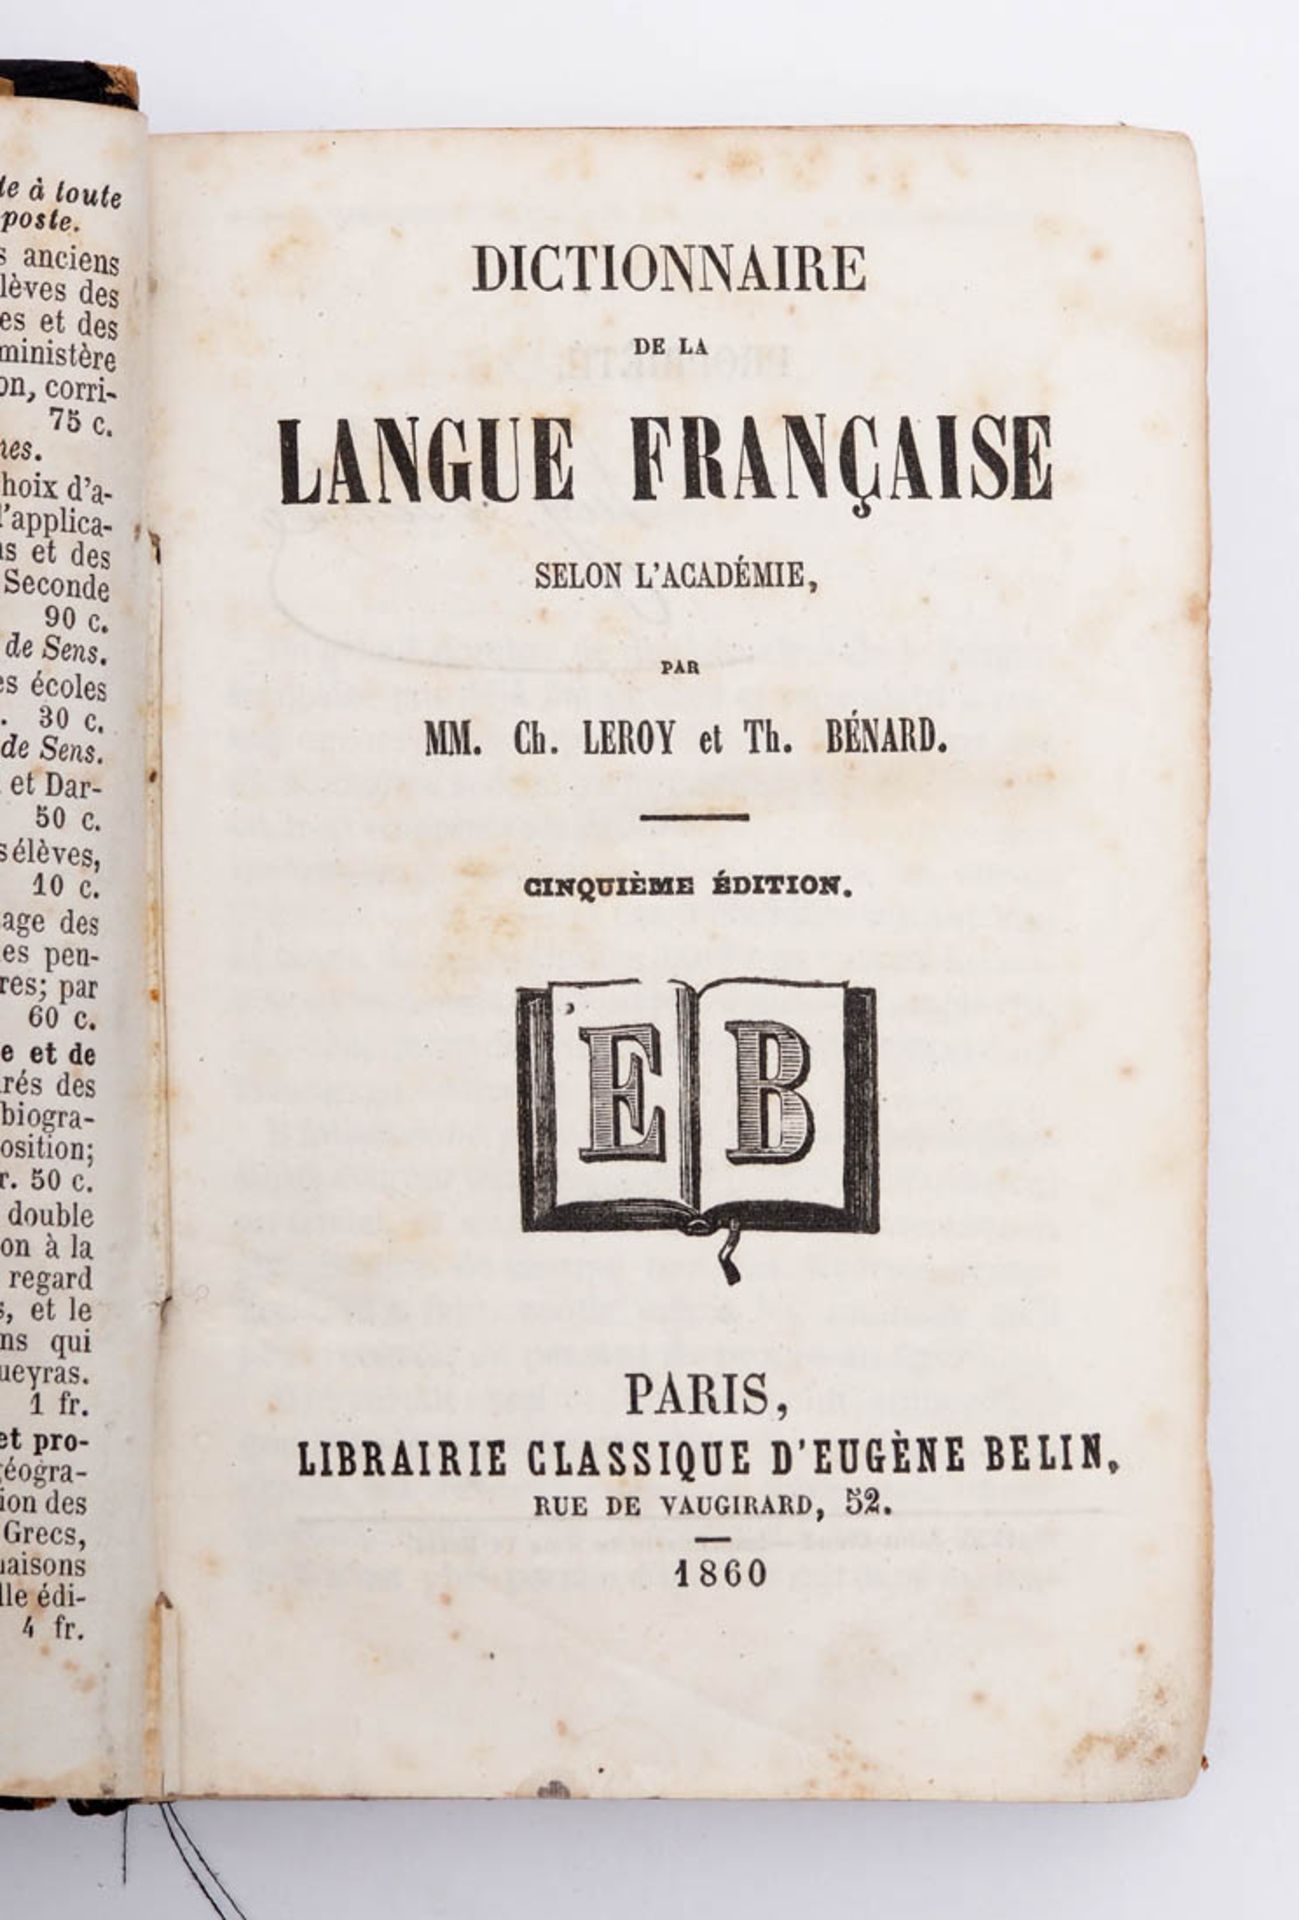 Französisches Wörterbuch Leroy und Bénard: Dictionnaire de la langue francaise, Belin, Paris 1860. - Bild 2 aus 3